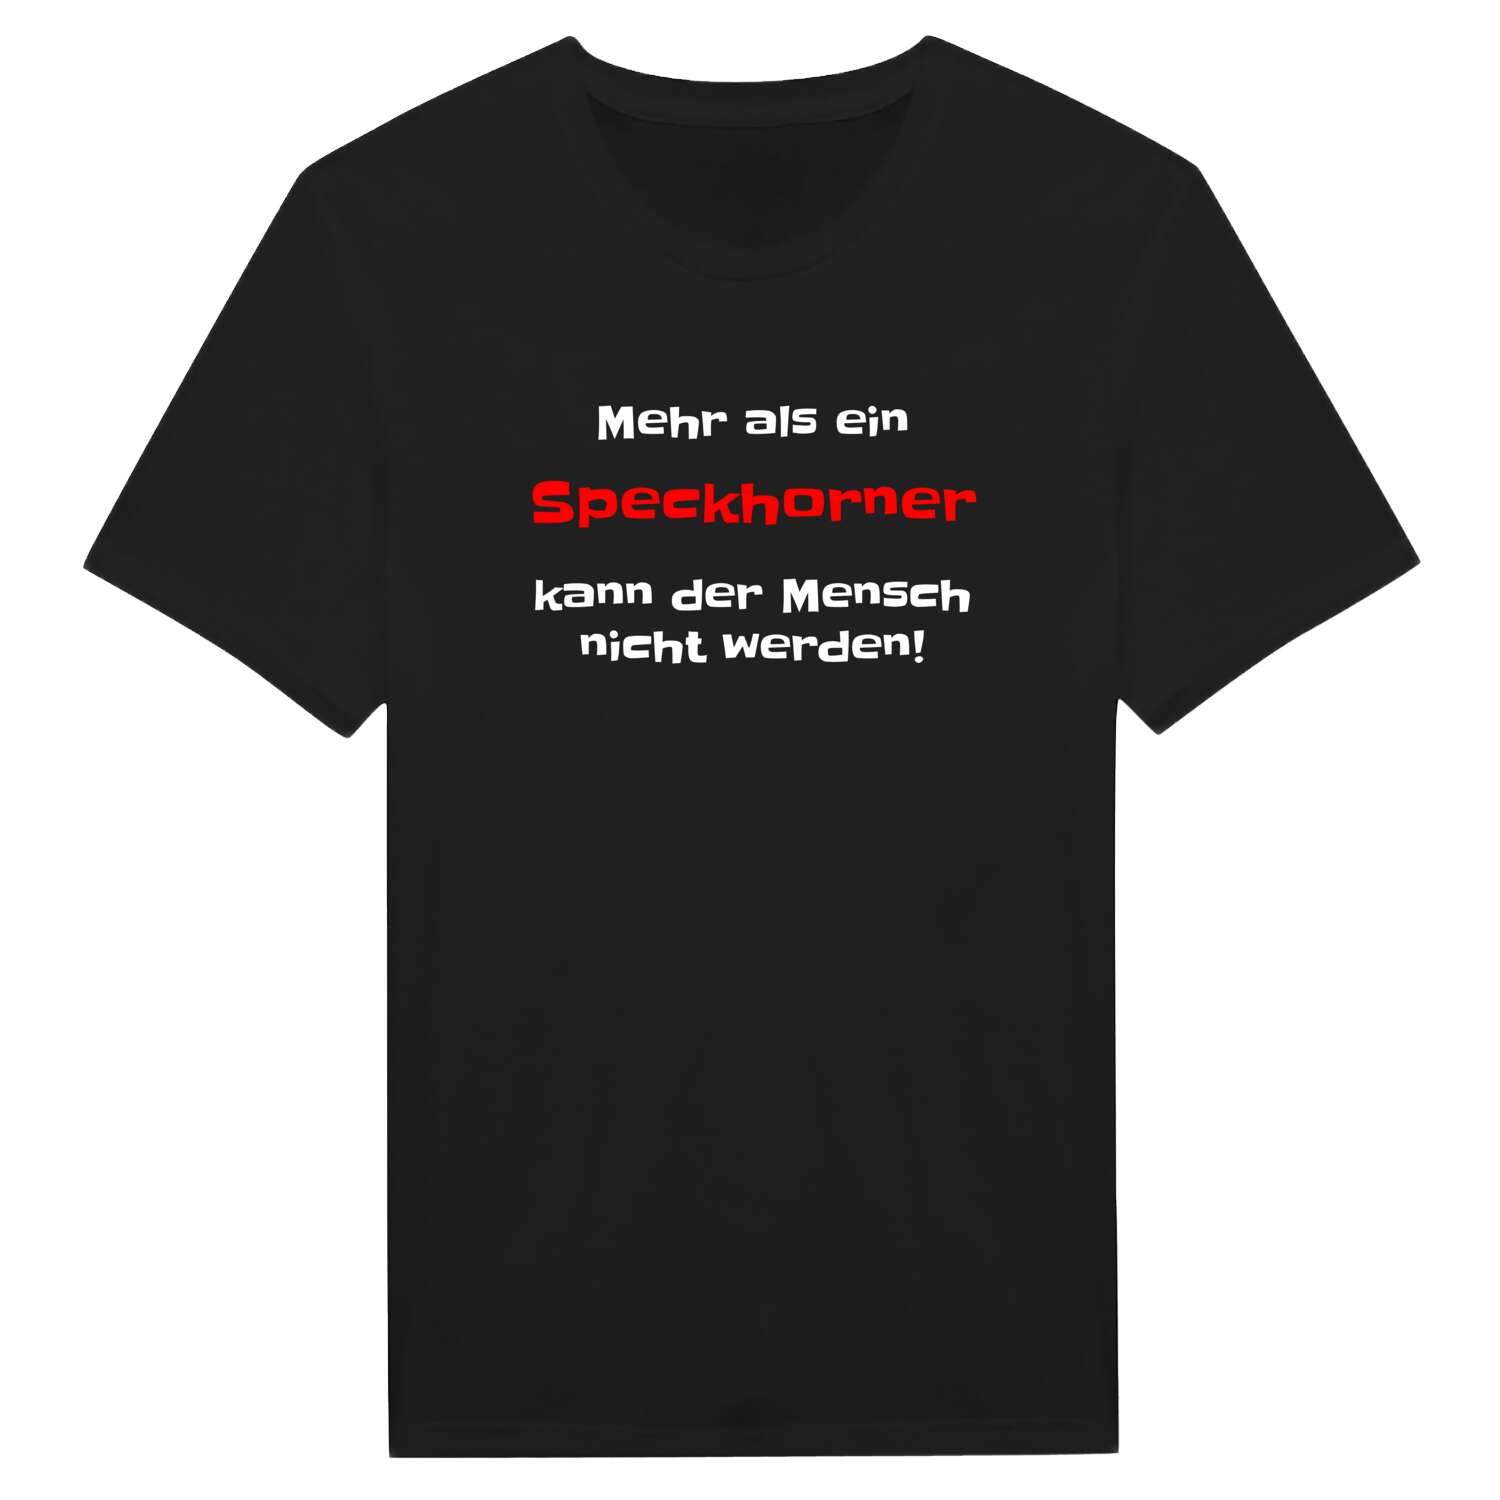 Speckhorn T-Shirt »Mehr als ein«